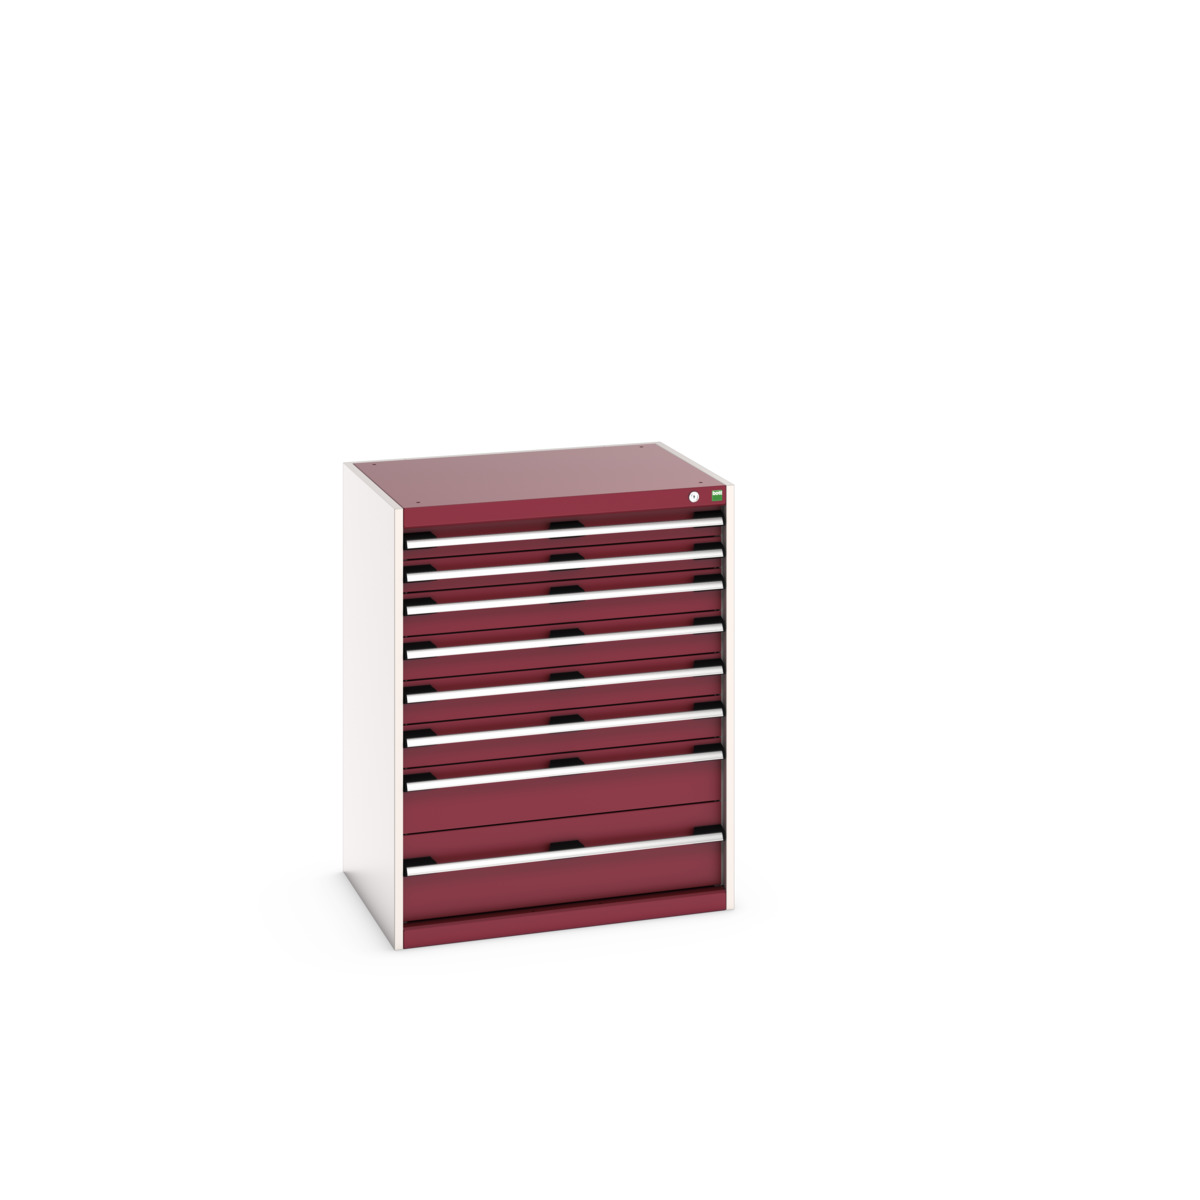 40020142.24V - cubio drawer cabinet